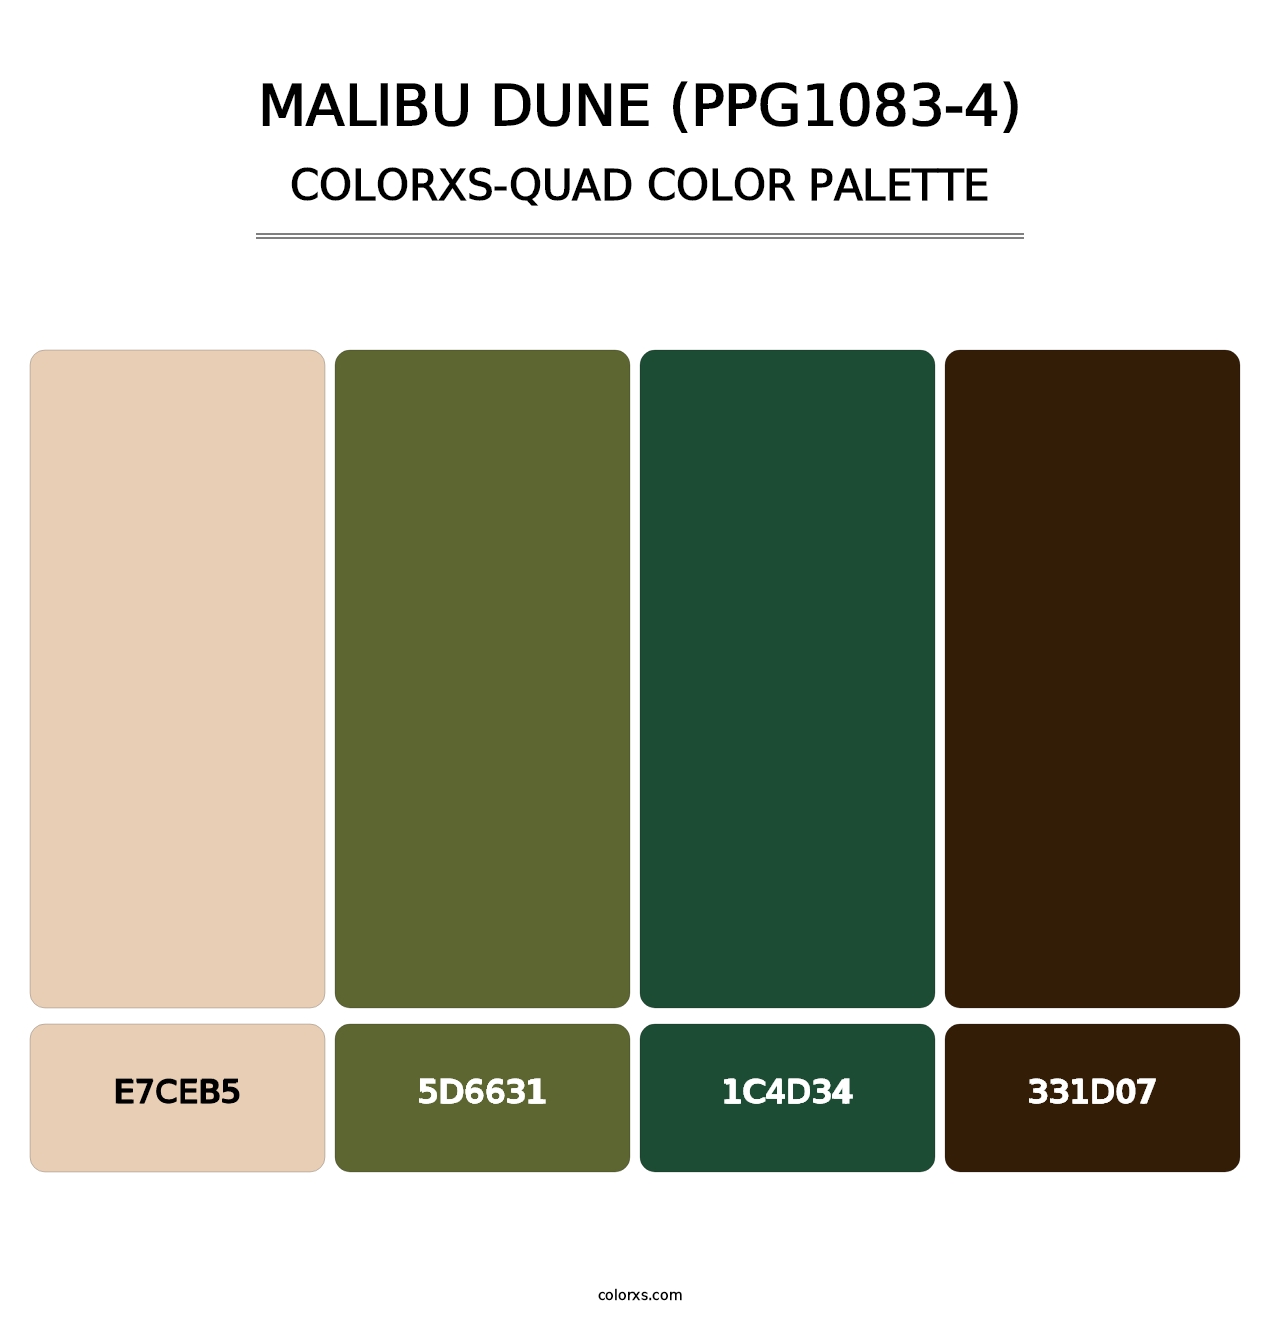 Malibu Dune (PPG1083-4) - Colorxs Quad Palette